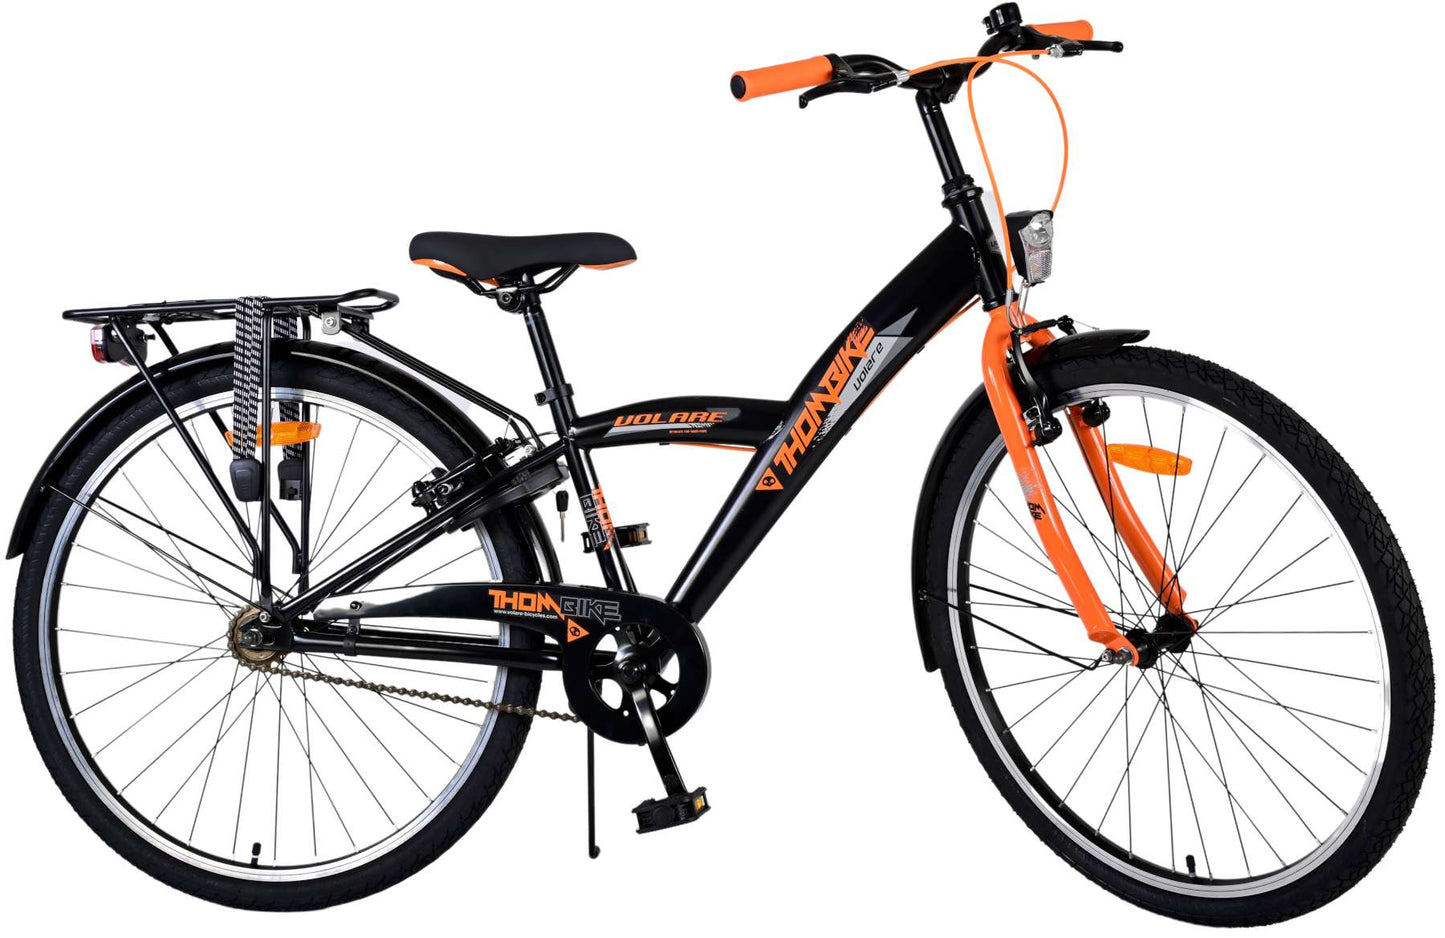 Bike per bambini Volare Thbike - Boys - 26 pollici - Arancia nera - Freni a due mani